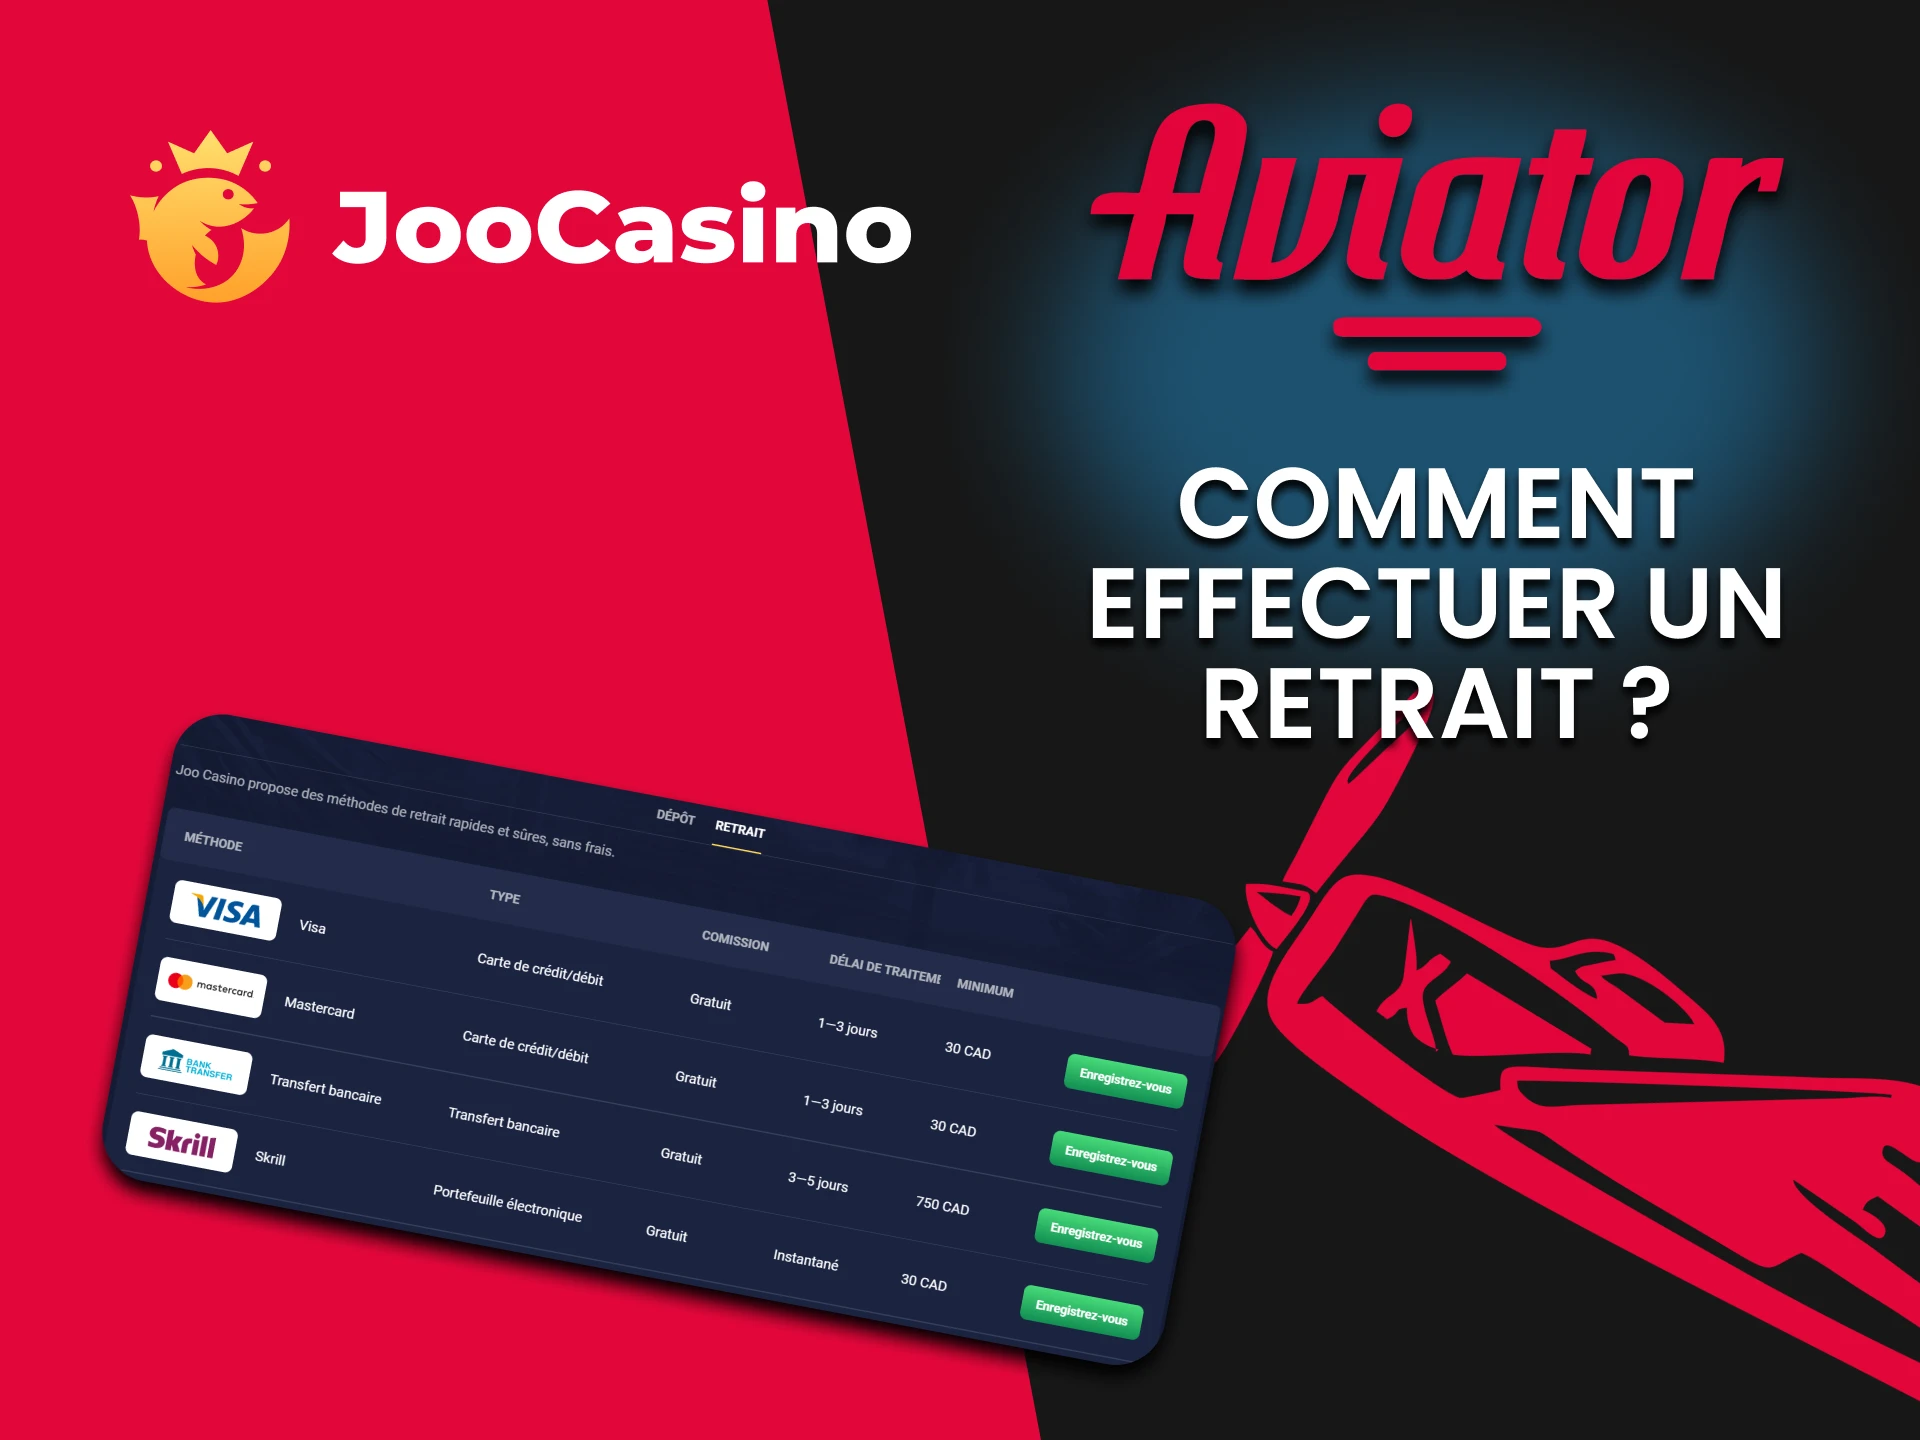 Nous vous parlerons de la méthode de retrait pour Aviator sur Joo Casino.